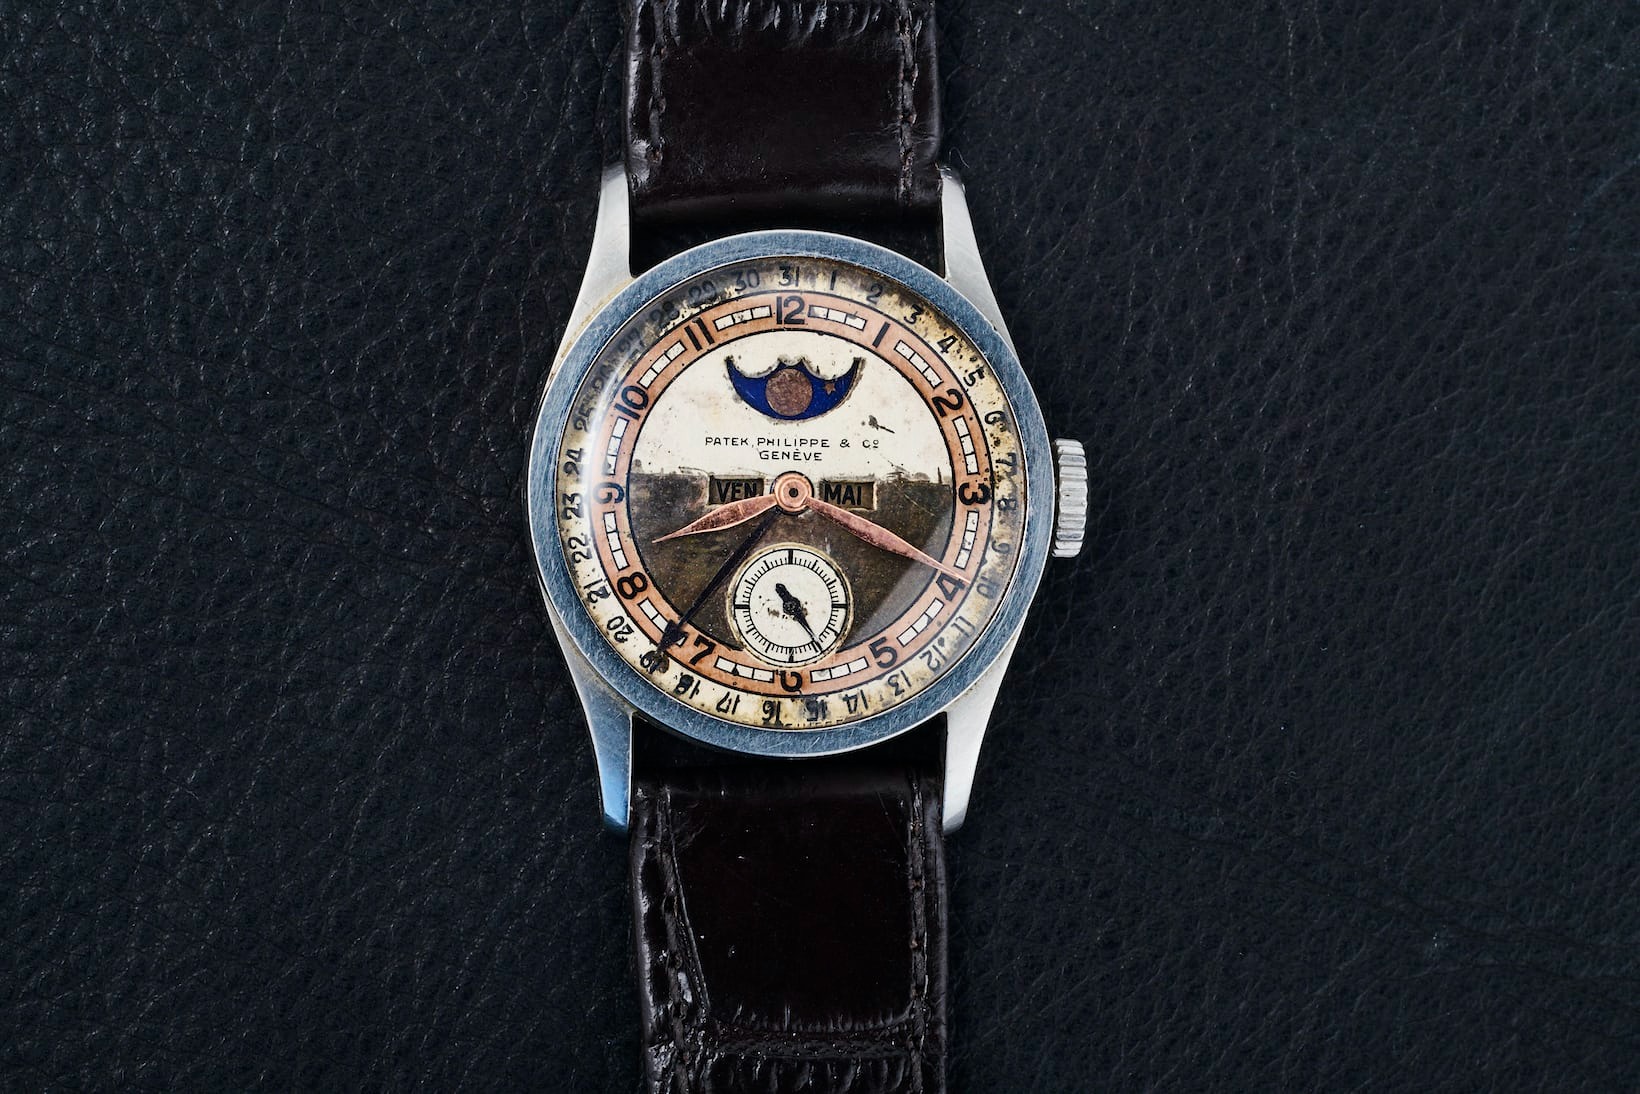 Đồng hồ Patek Philippe thuộc sở hữu từ Hoàng đế cuối cùng - Phổ Nghi (Puyi) được bán với giá 6,2 triệu USD